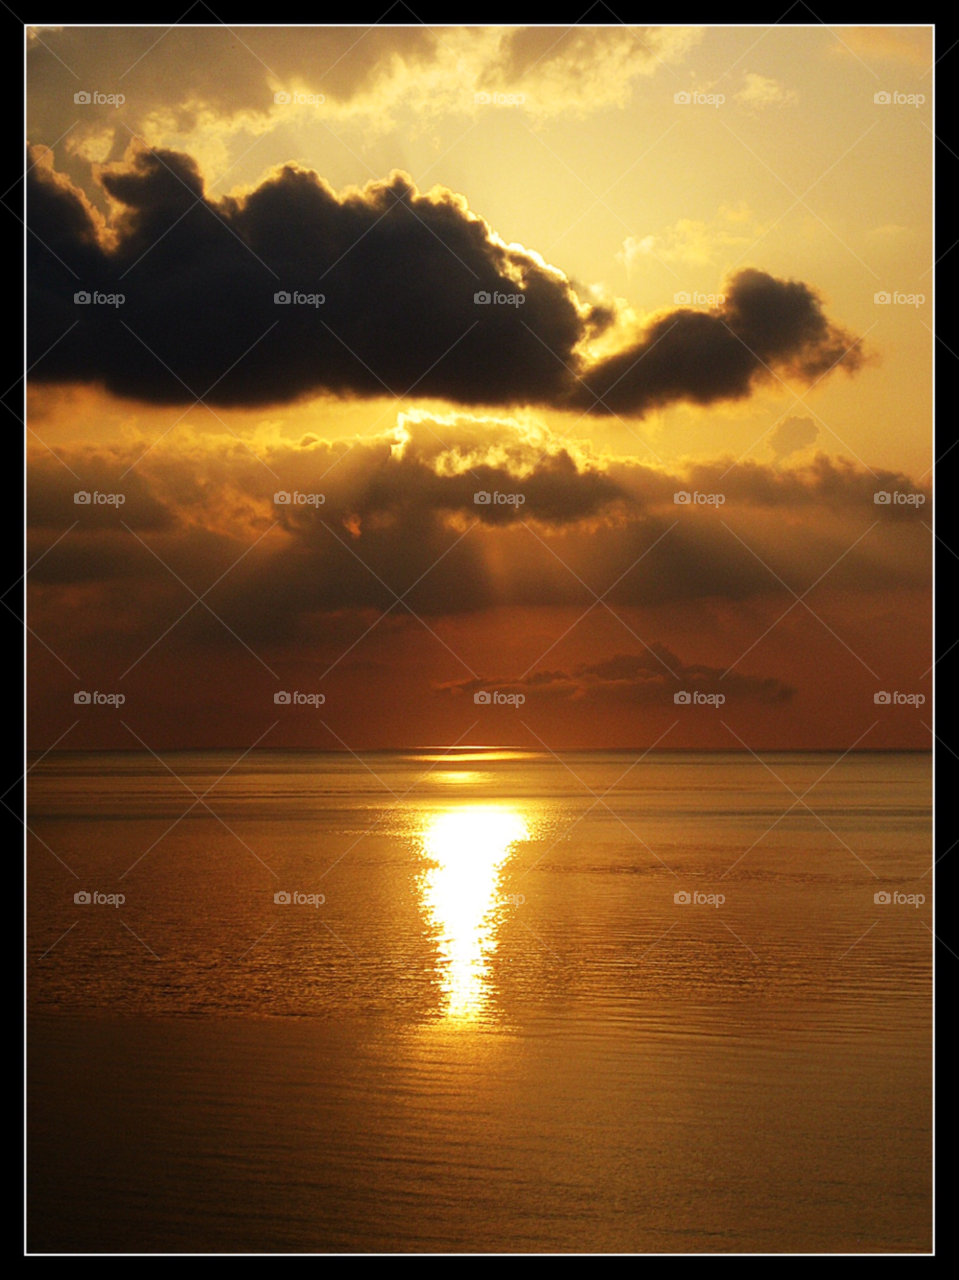 zante greece ocean clouds sunrise by mojo26